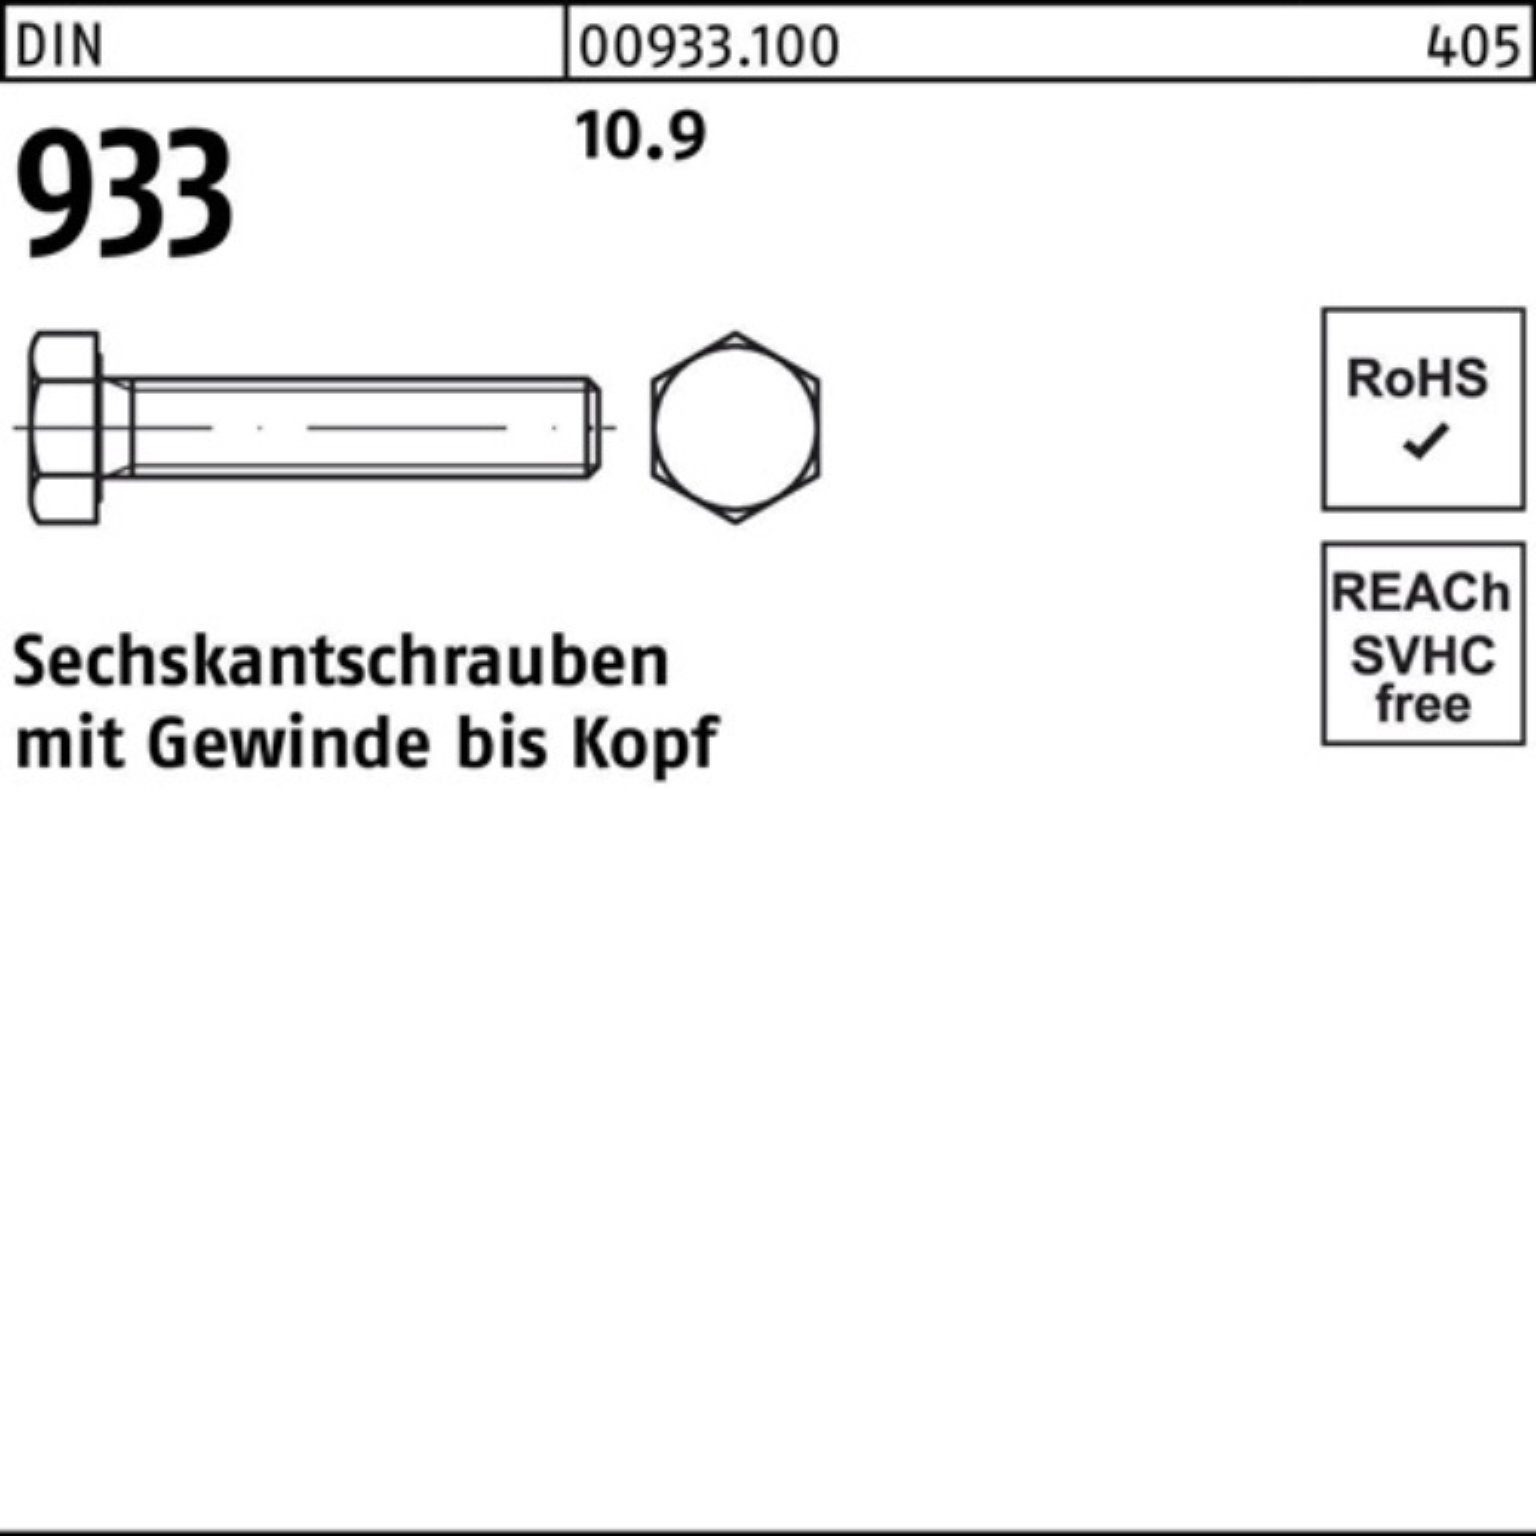 Reyher Sechskantschraube Stück 500 VG M6x 10.9 Sechskantschraube 933 Pack 22 933 500er DIN DIN